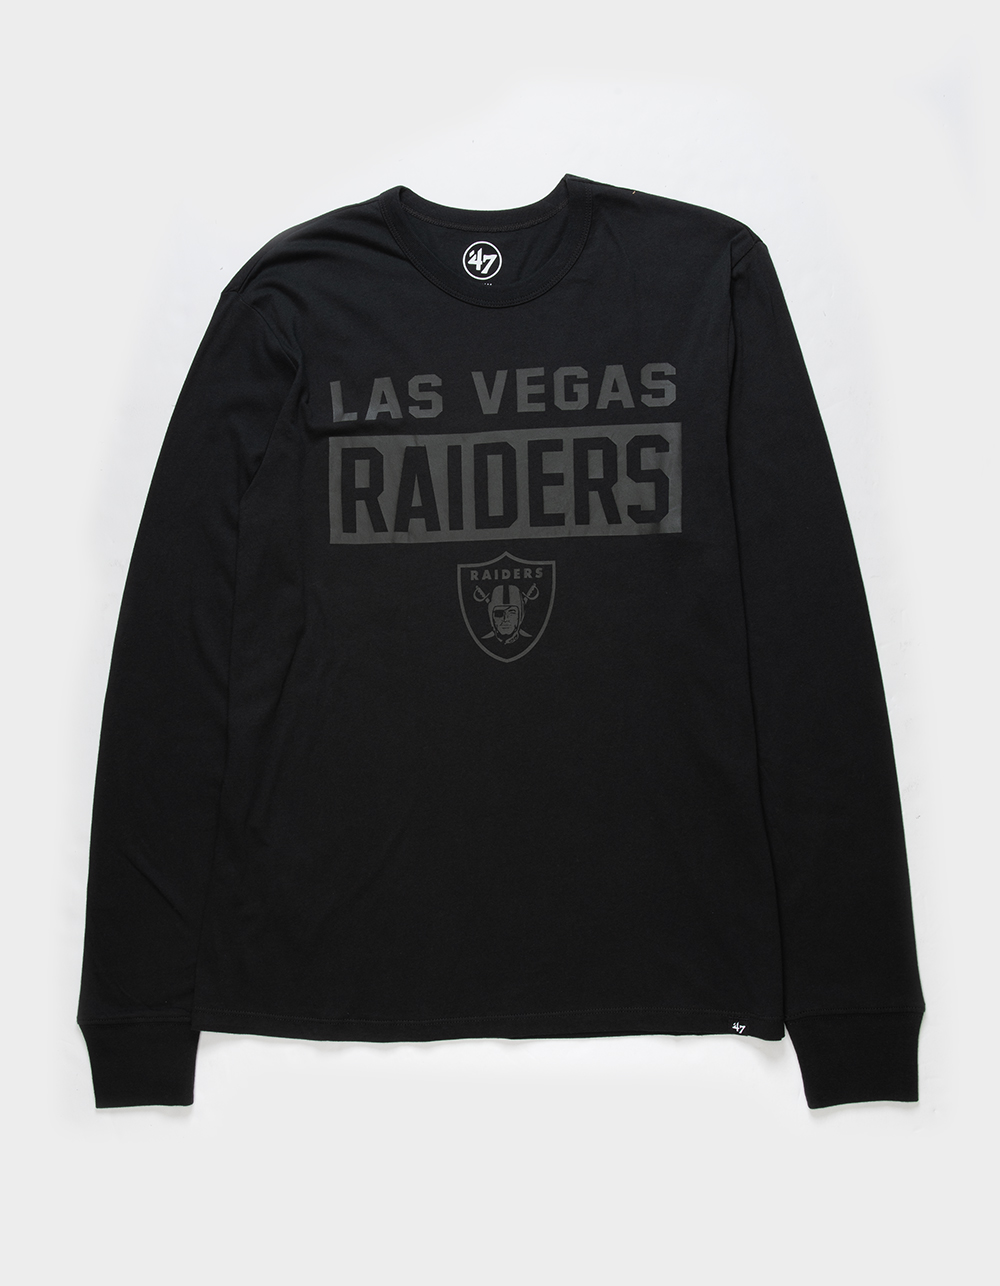 Las Vegas Raiders Shirt for Men Las Vegas Raiders Shirt for